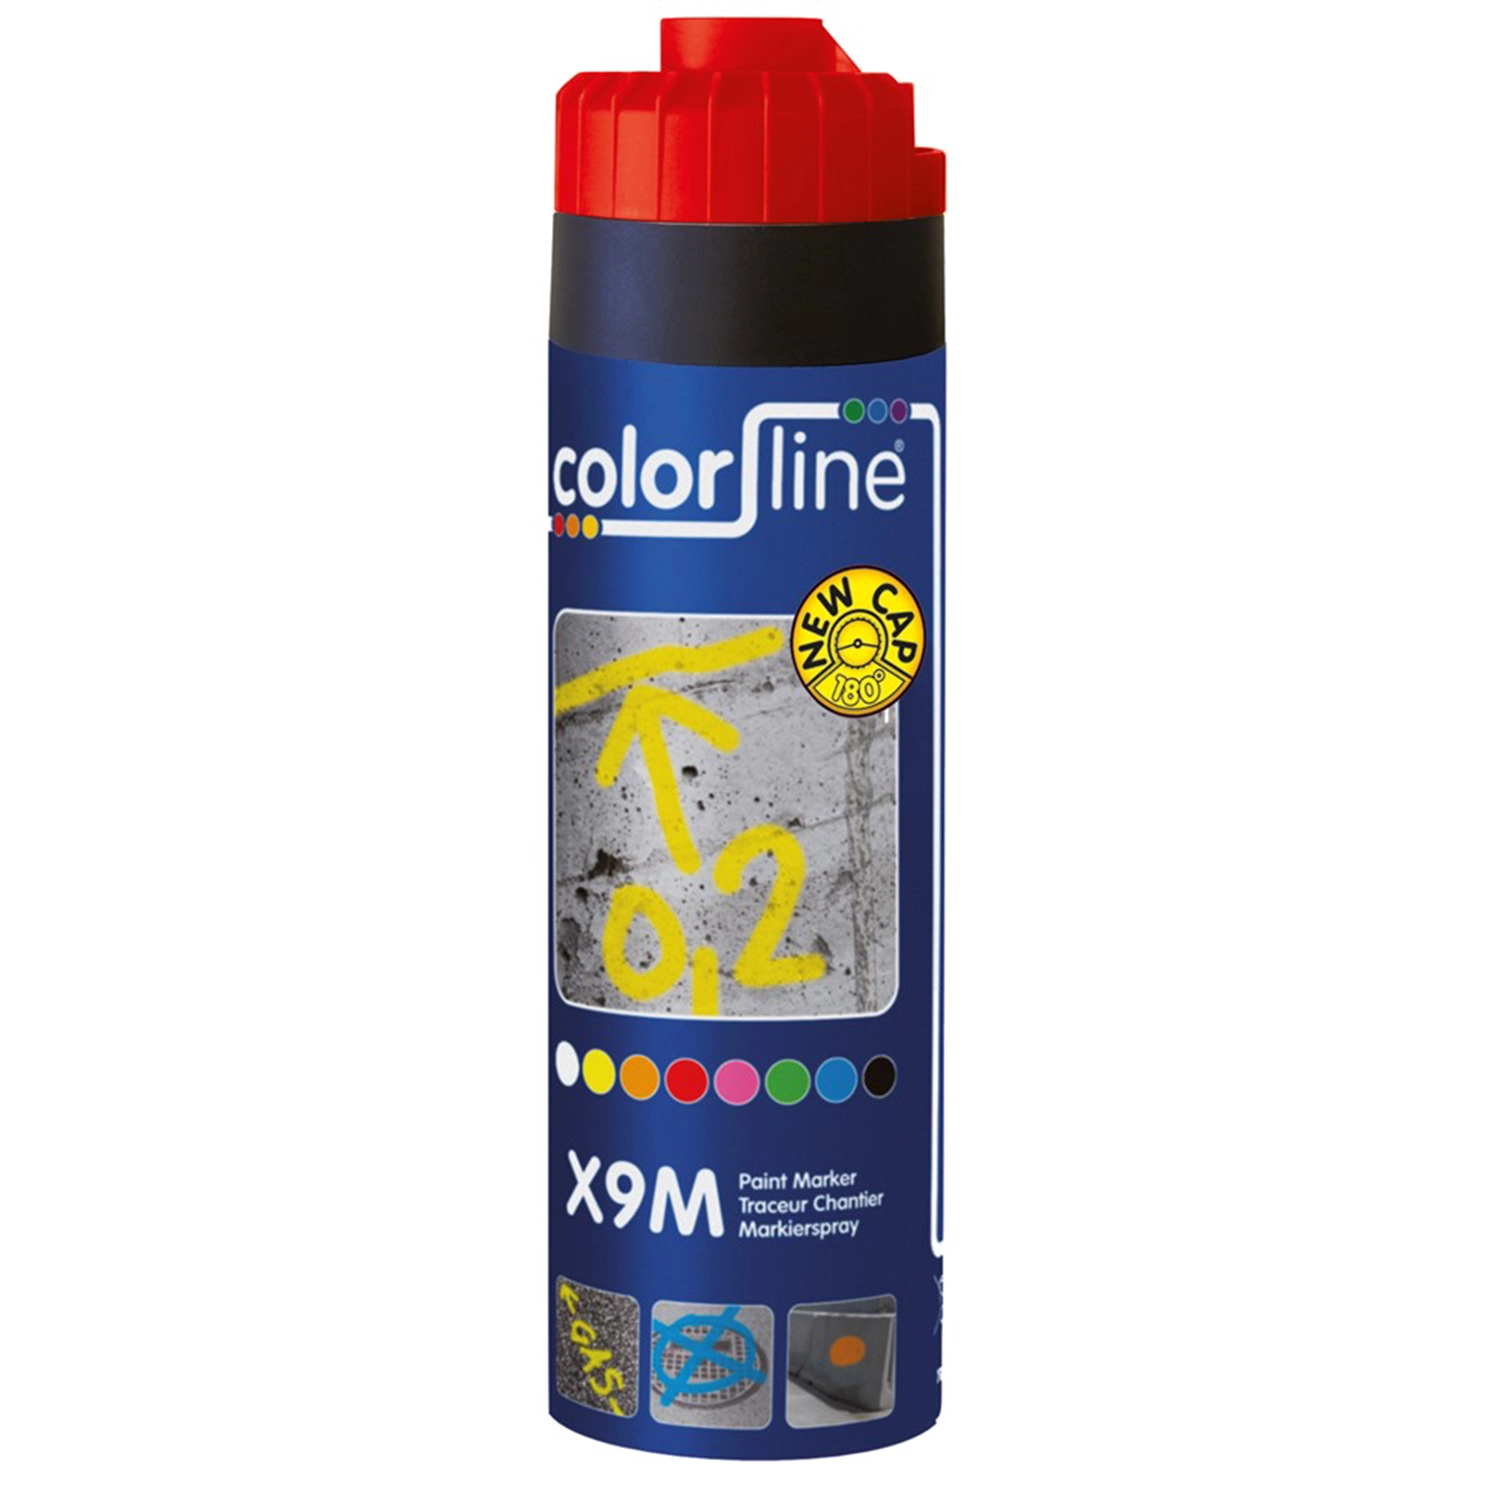 COLORLINE X9M Paint Marker - 500 Ml - Rood - Rode verfmarker met 500 ml inhoud en COLORLINE-logo.